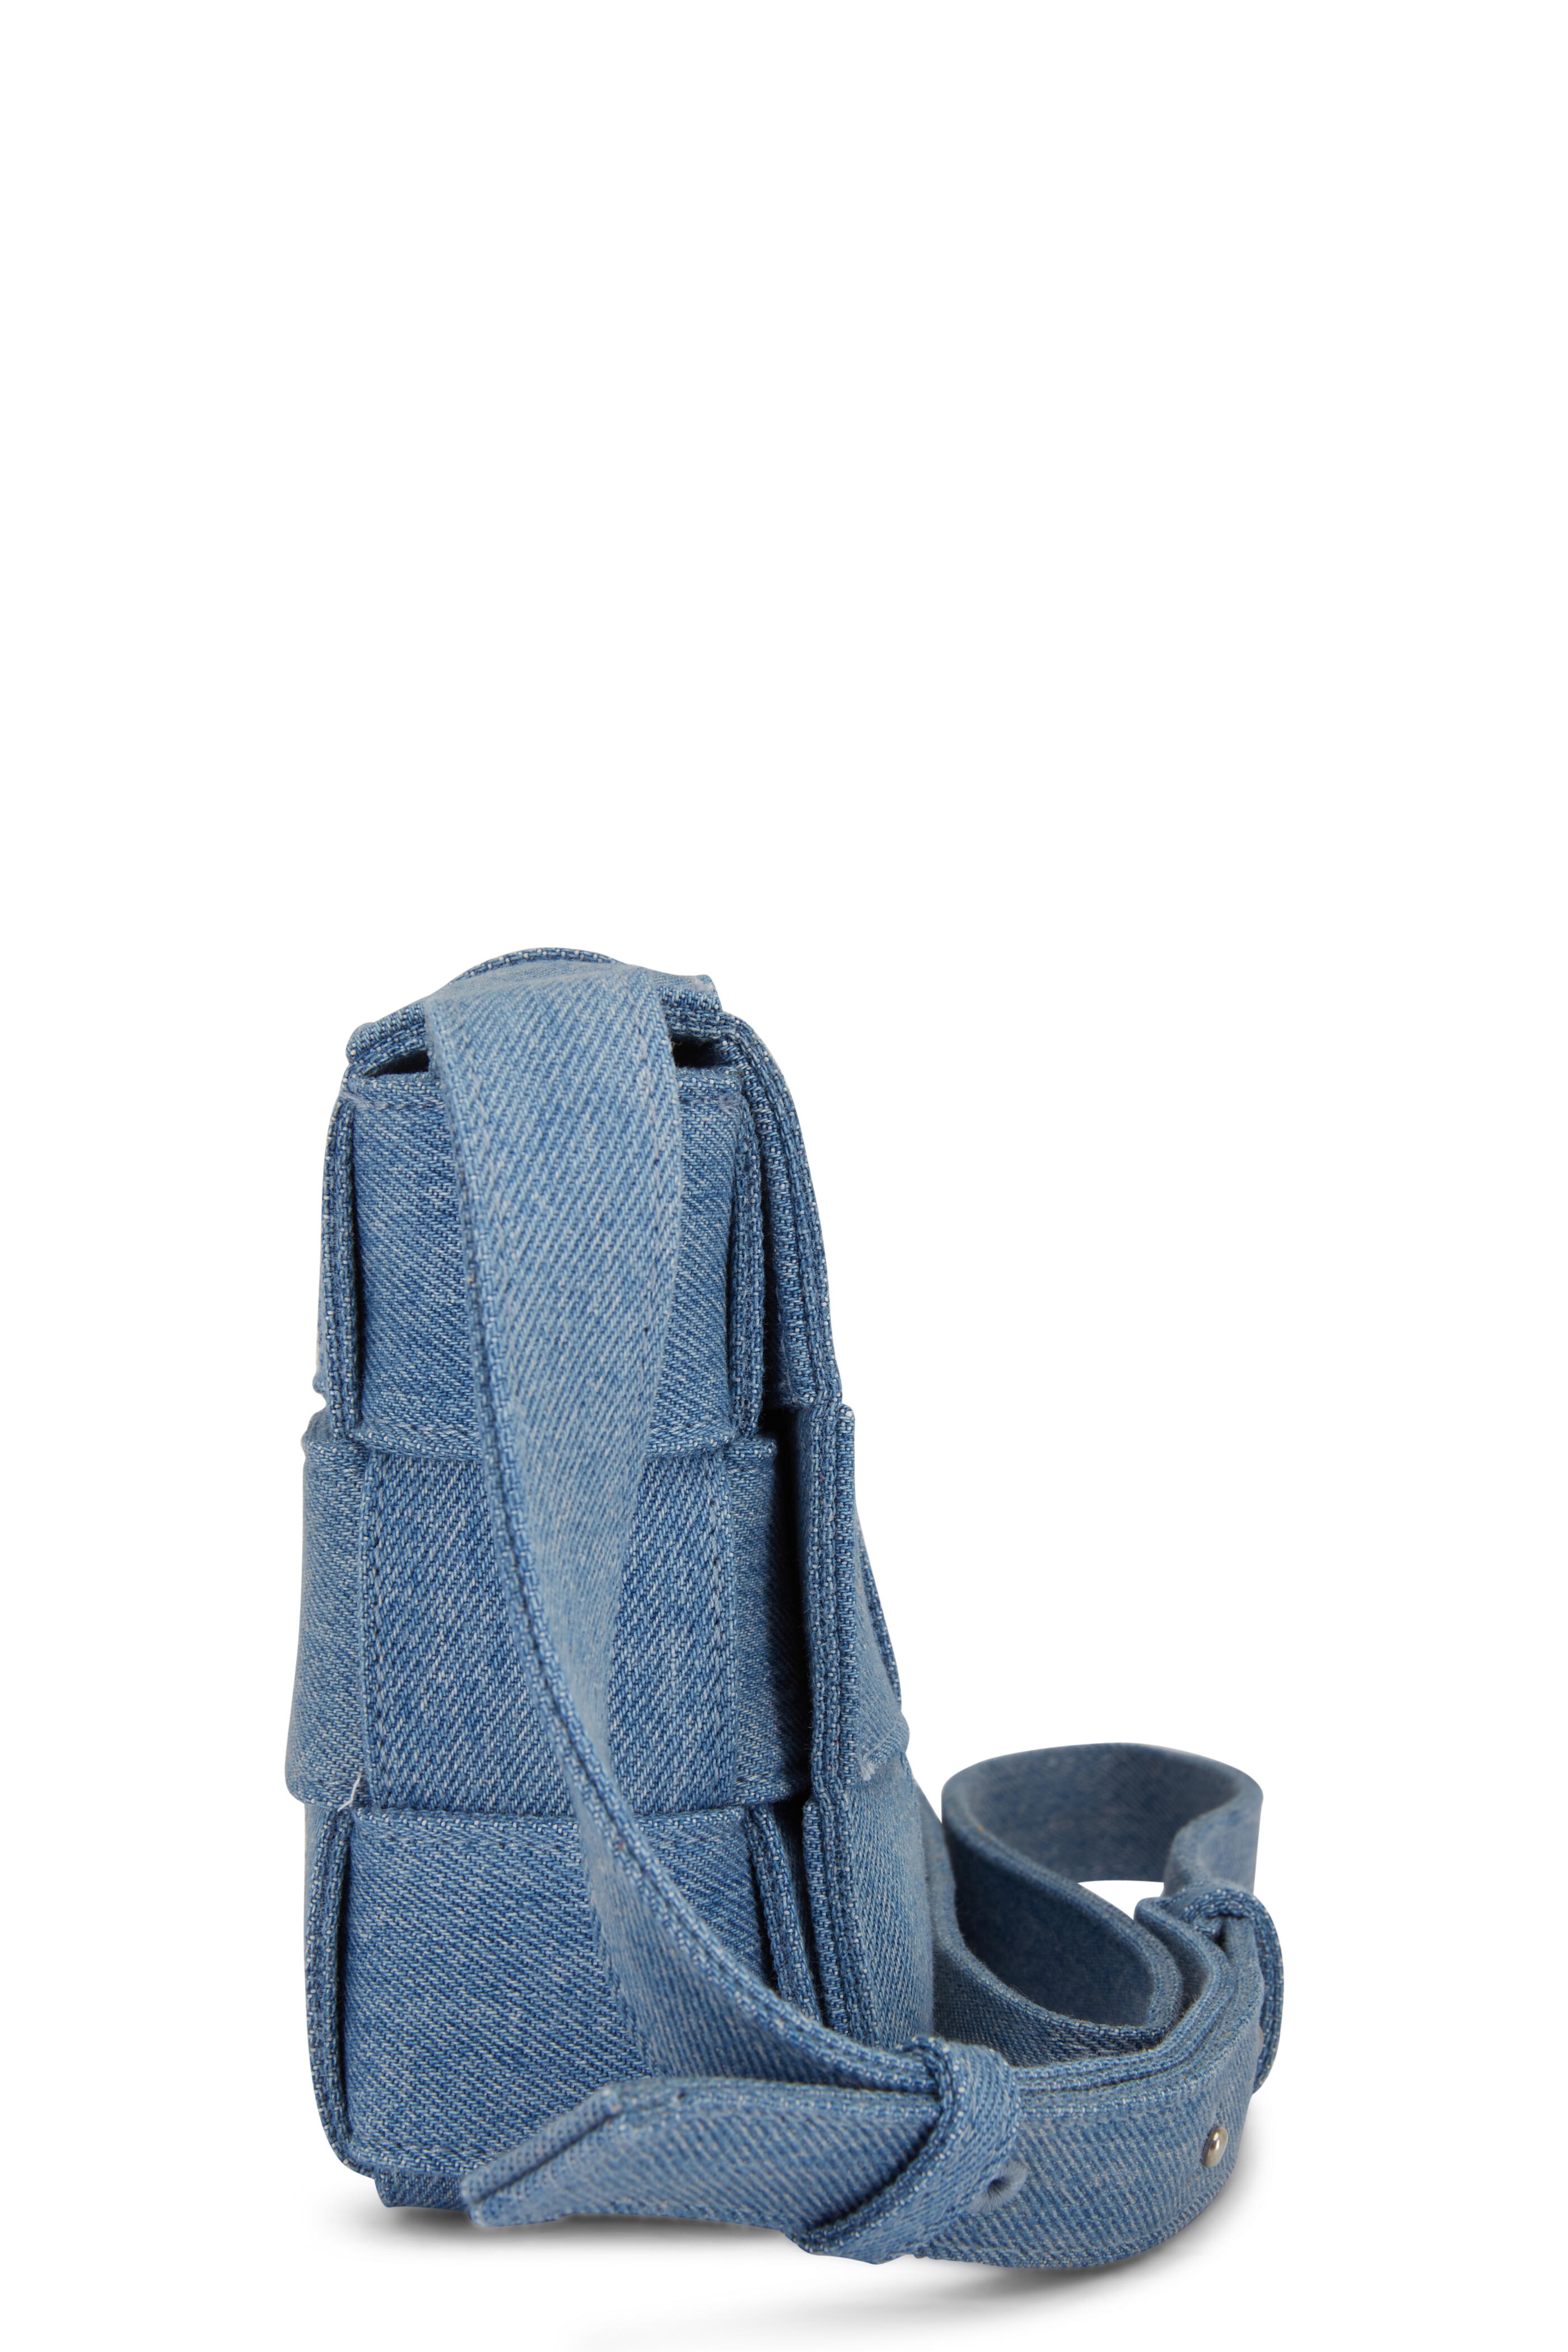 Three Denim clutch bags zipped purse BNIP Indigo, Dirty & Light Wash 